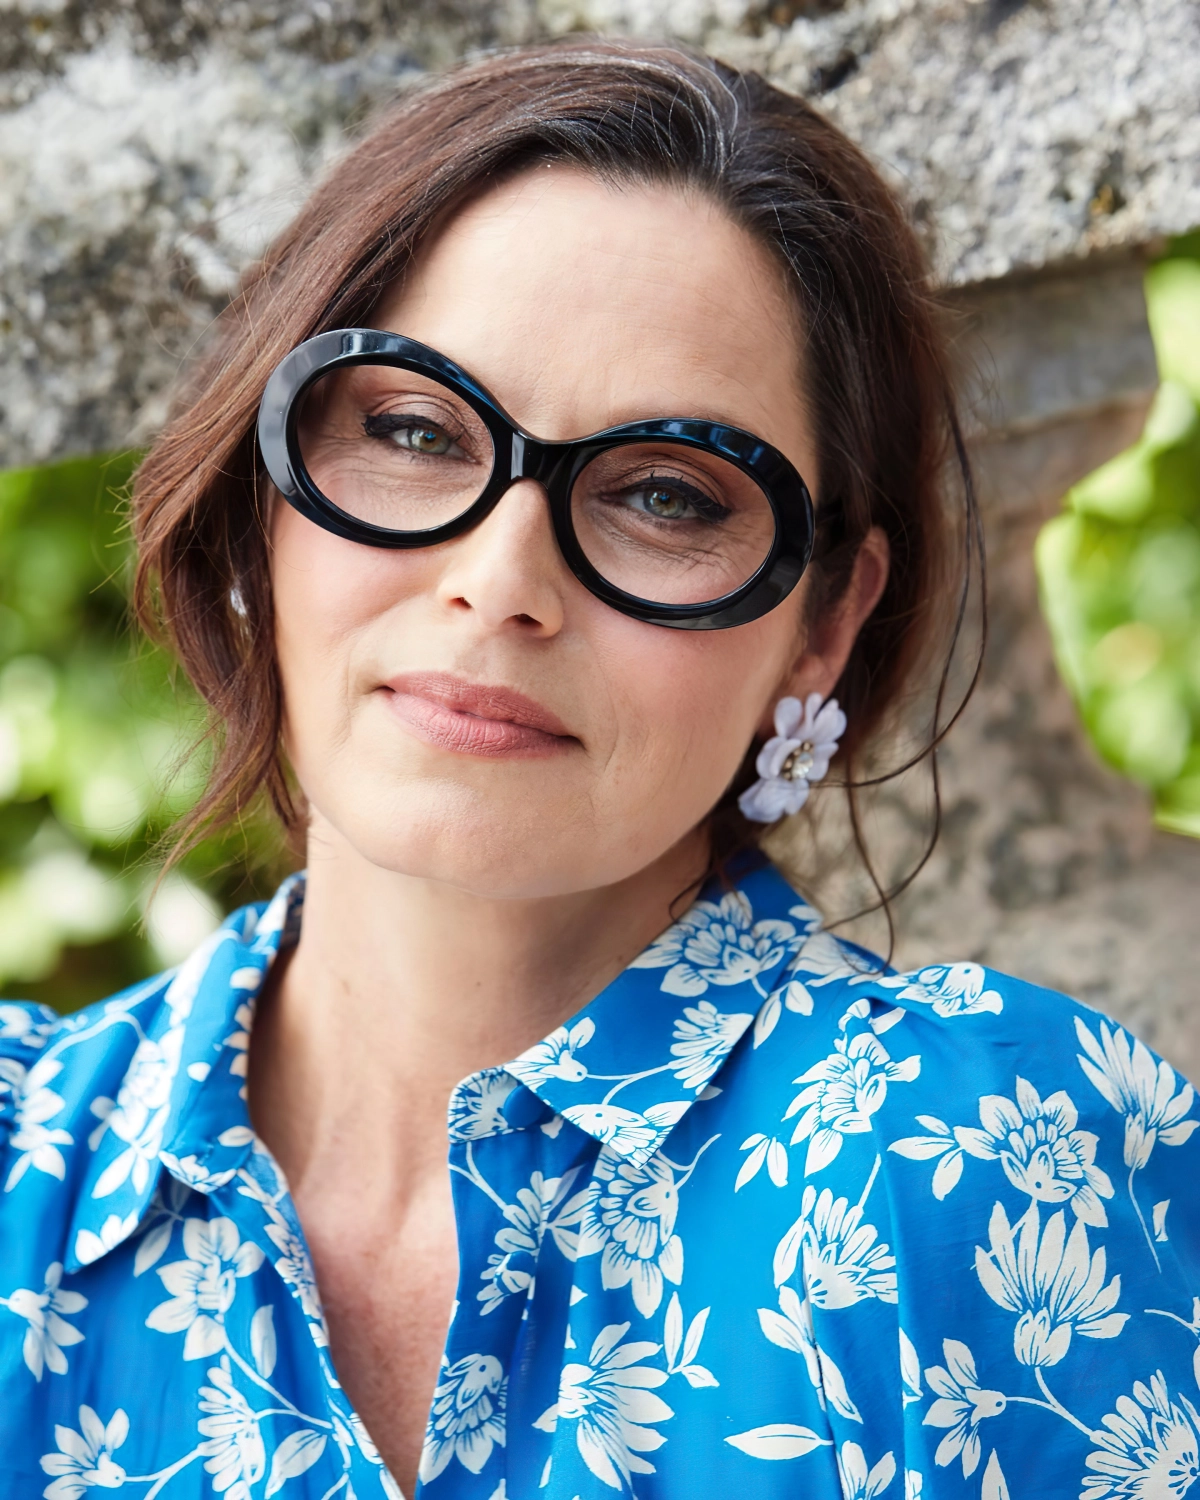 lunette de vue femme visage rond blouse bleue motifs floraux blancs